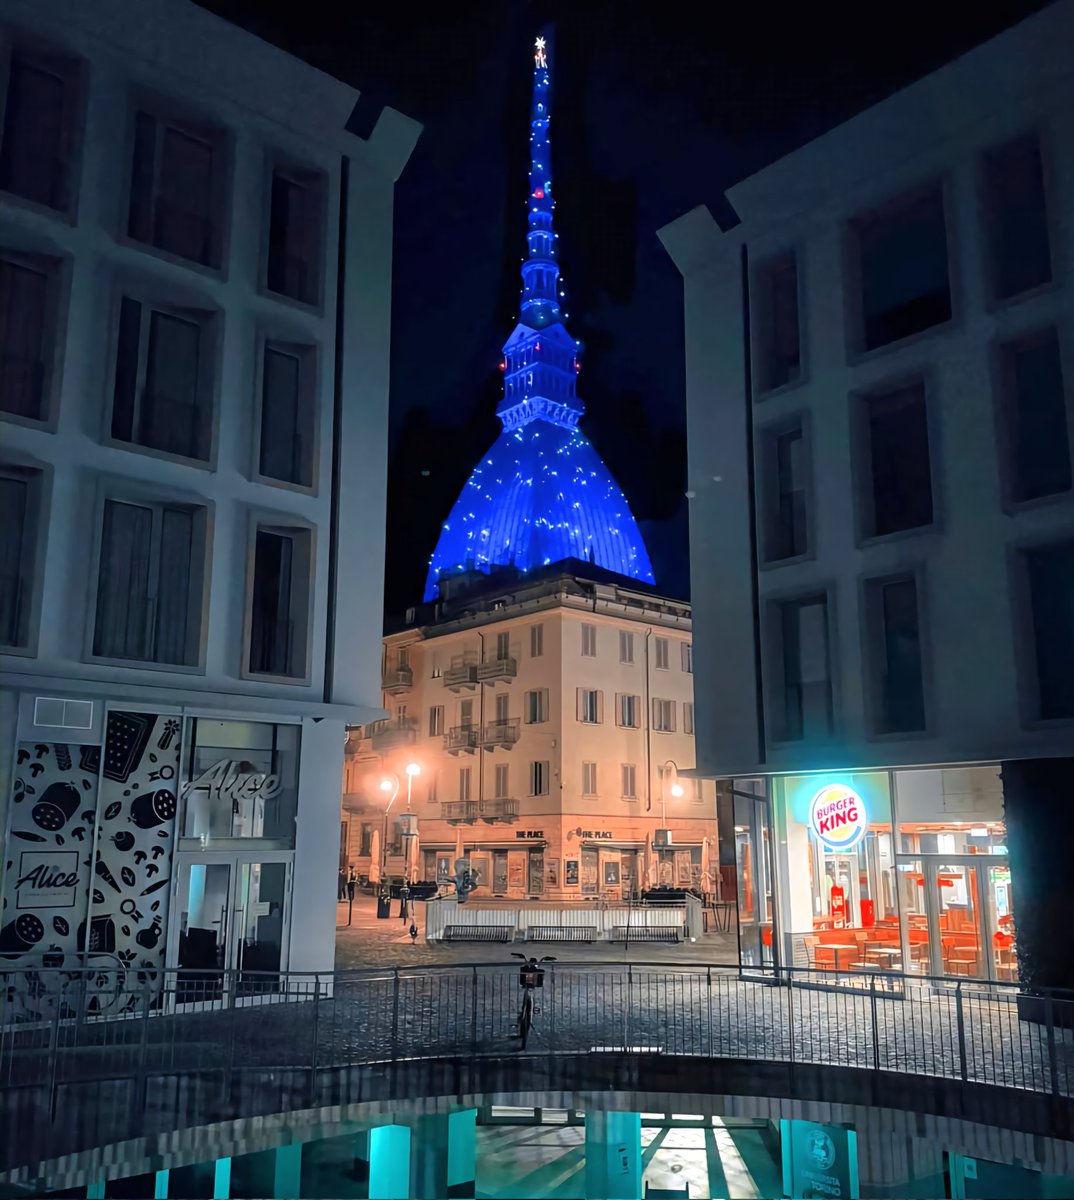 Buona serata con un'immagine notturna della #Moleantonelliana di Torino 🎄